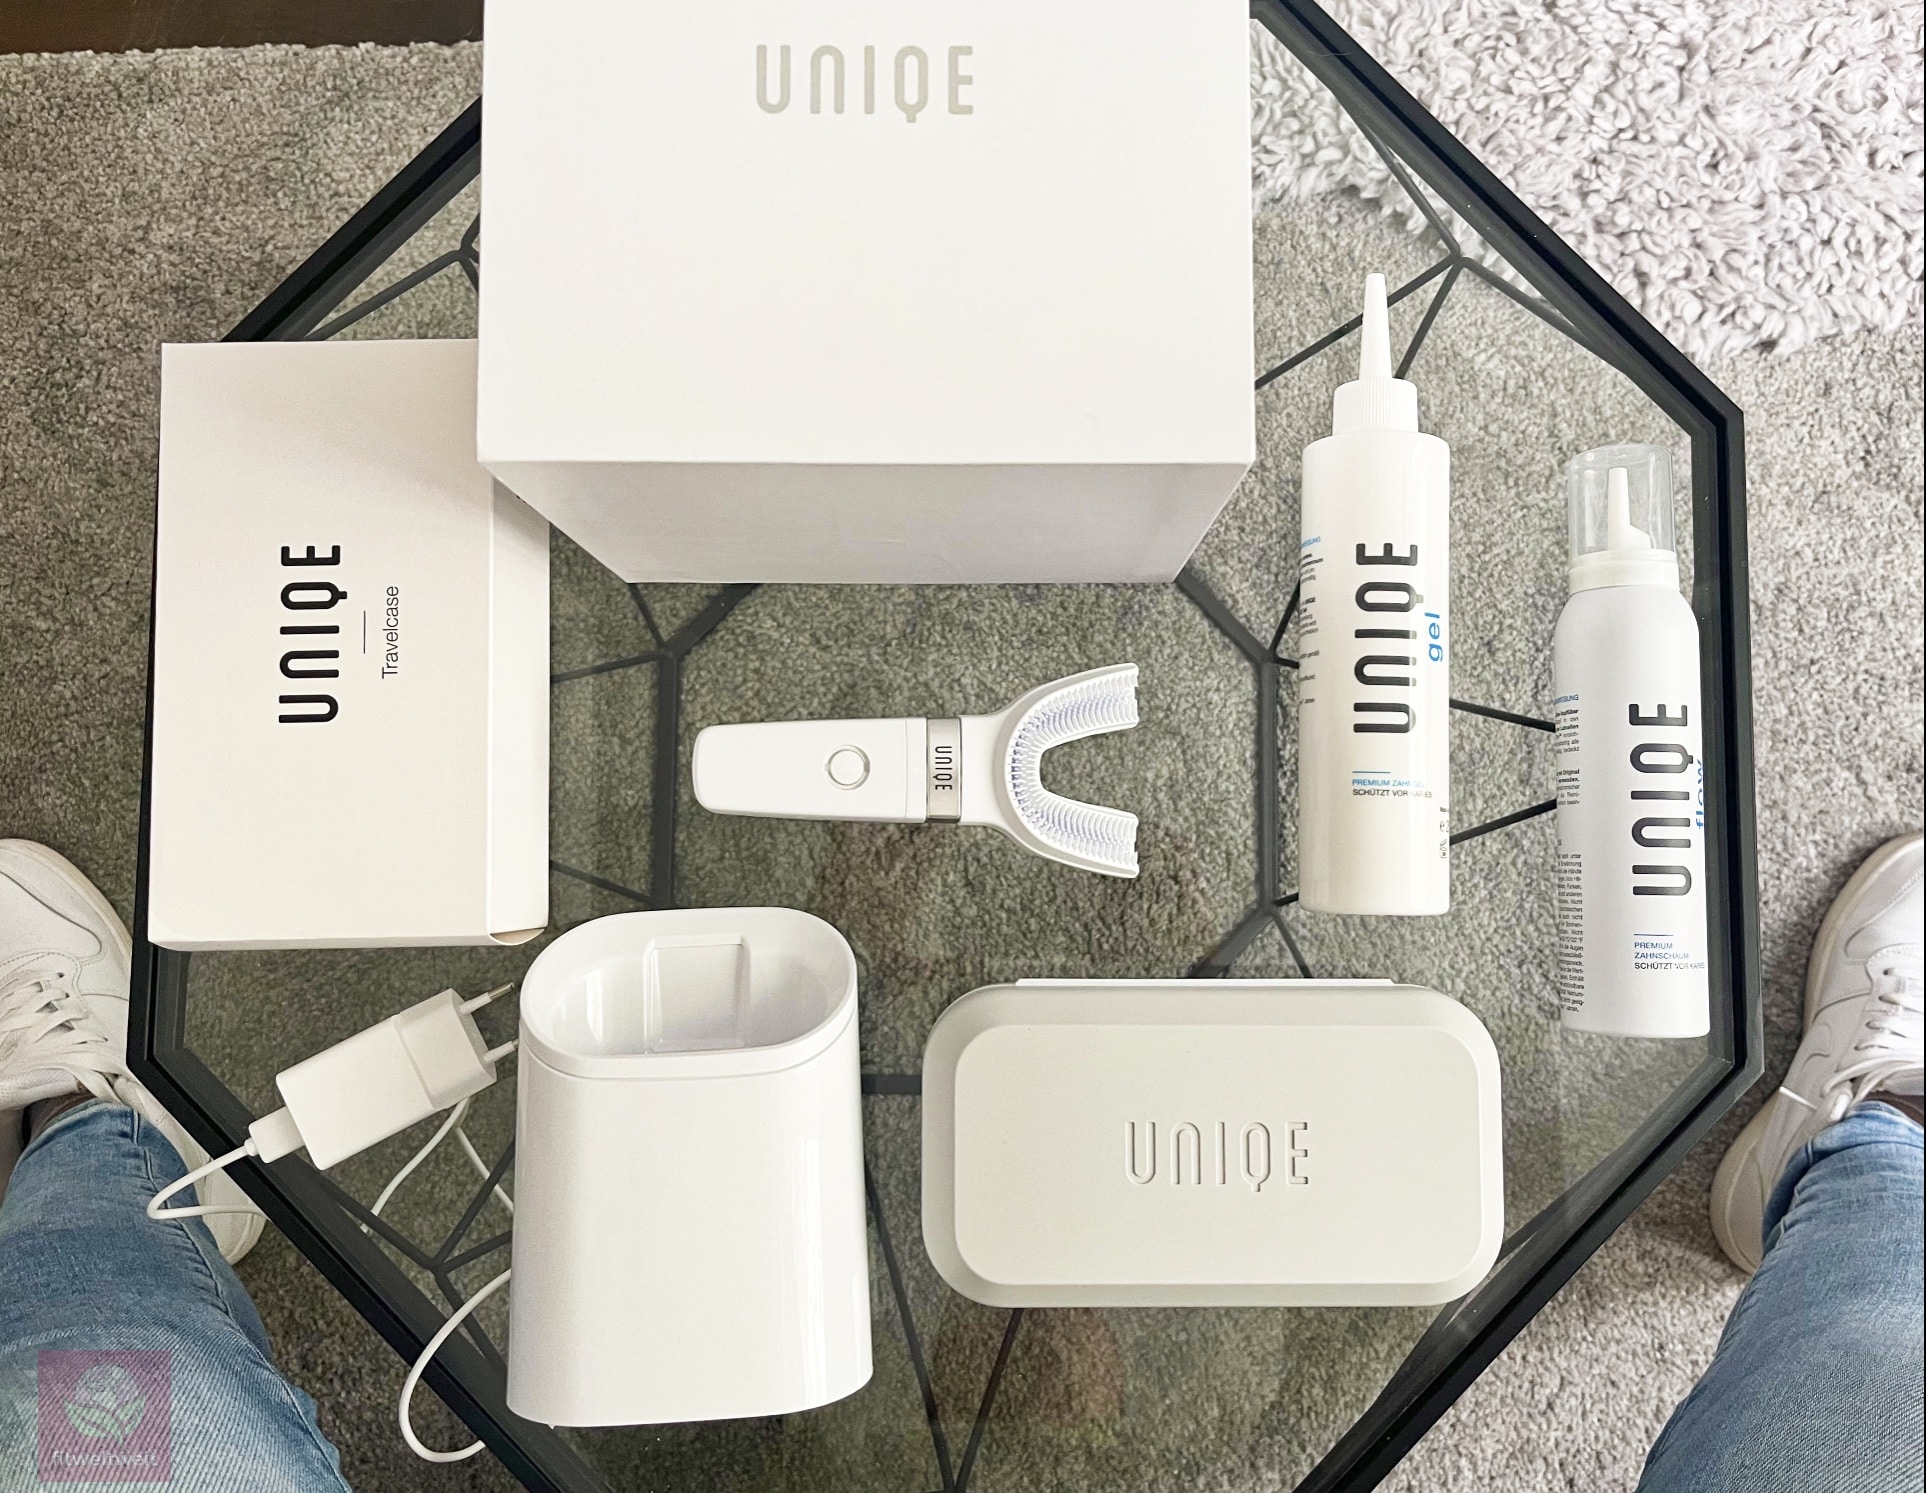 UNIQE Flow Erfahrungen elektrische Zahnbürste Verpackung Travelcase Flow Gel. UNIQE ONE Startetest bestehend aus der mit der Uniqe Flow Zahnbürste, Ladestation, Flow Zahnschaum und Zahngel und das passende Travelcase (inkl. Ladefunktion)